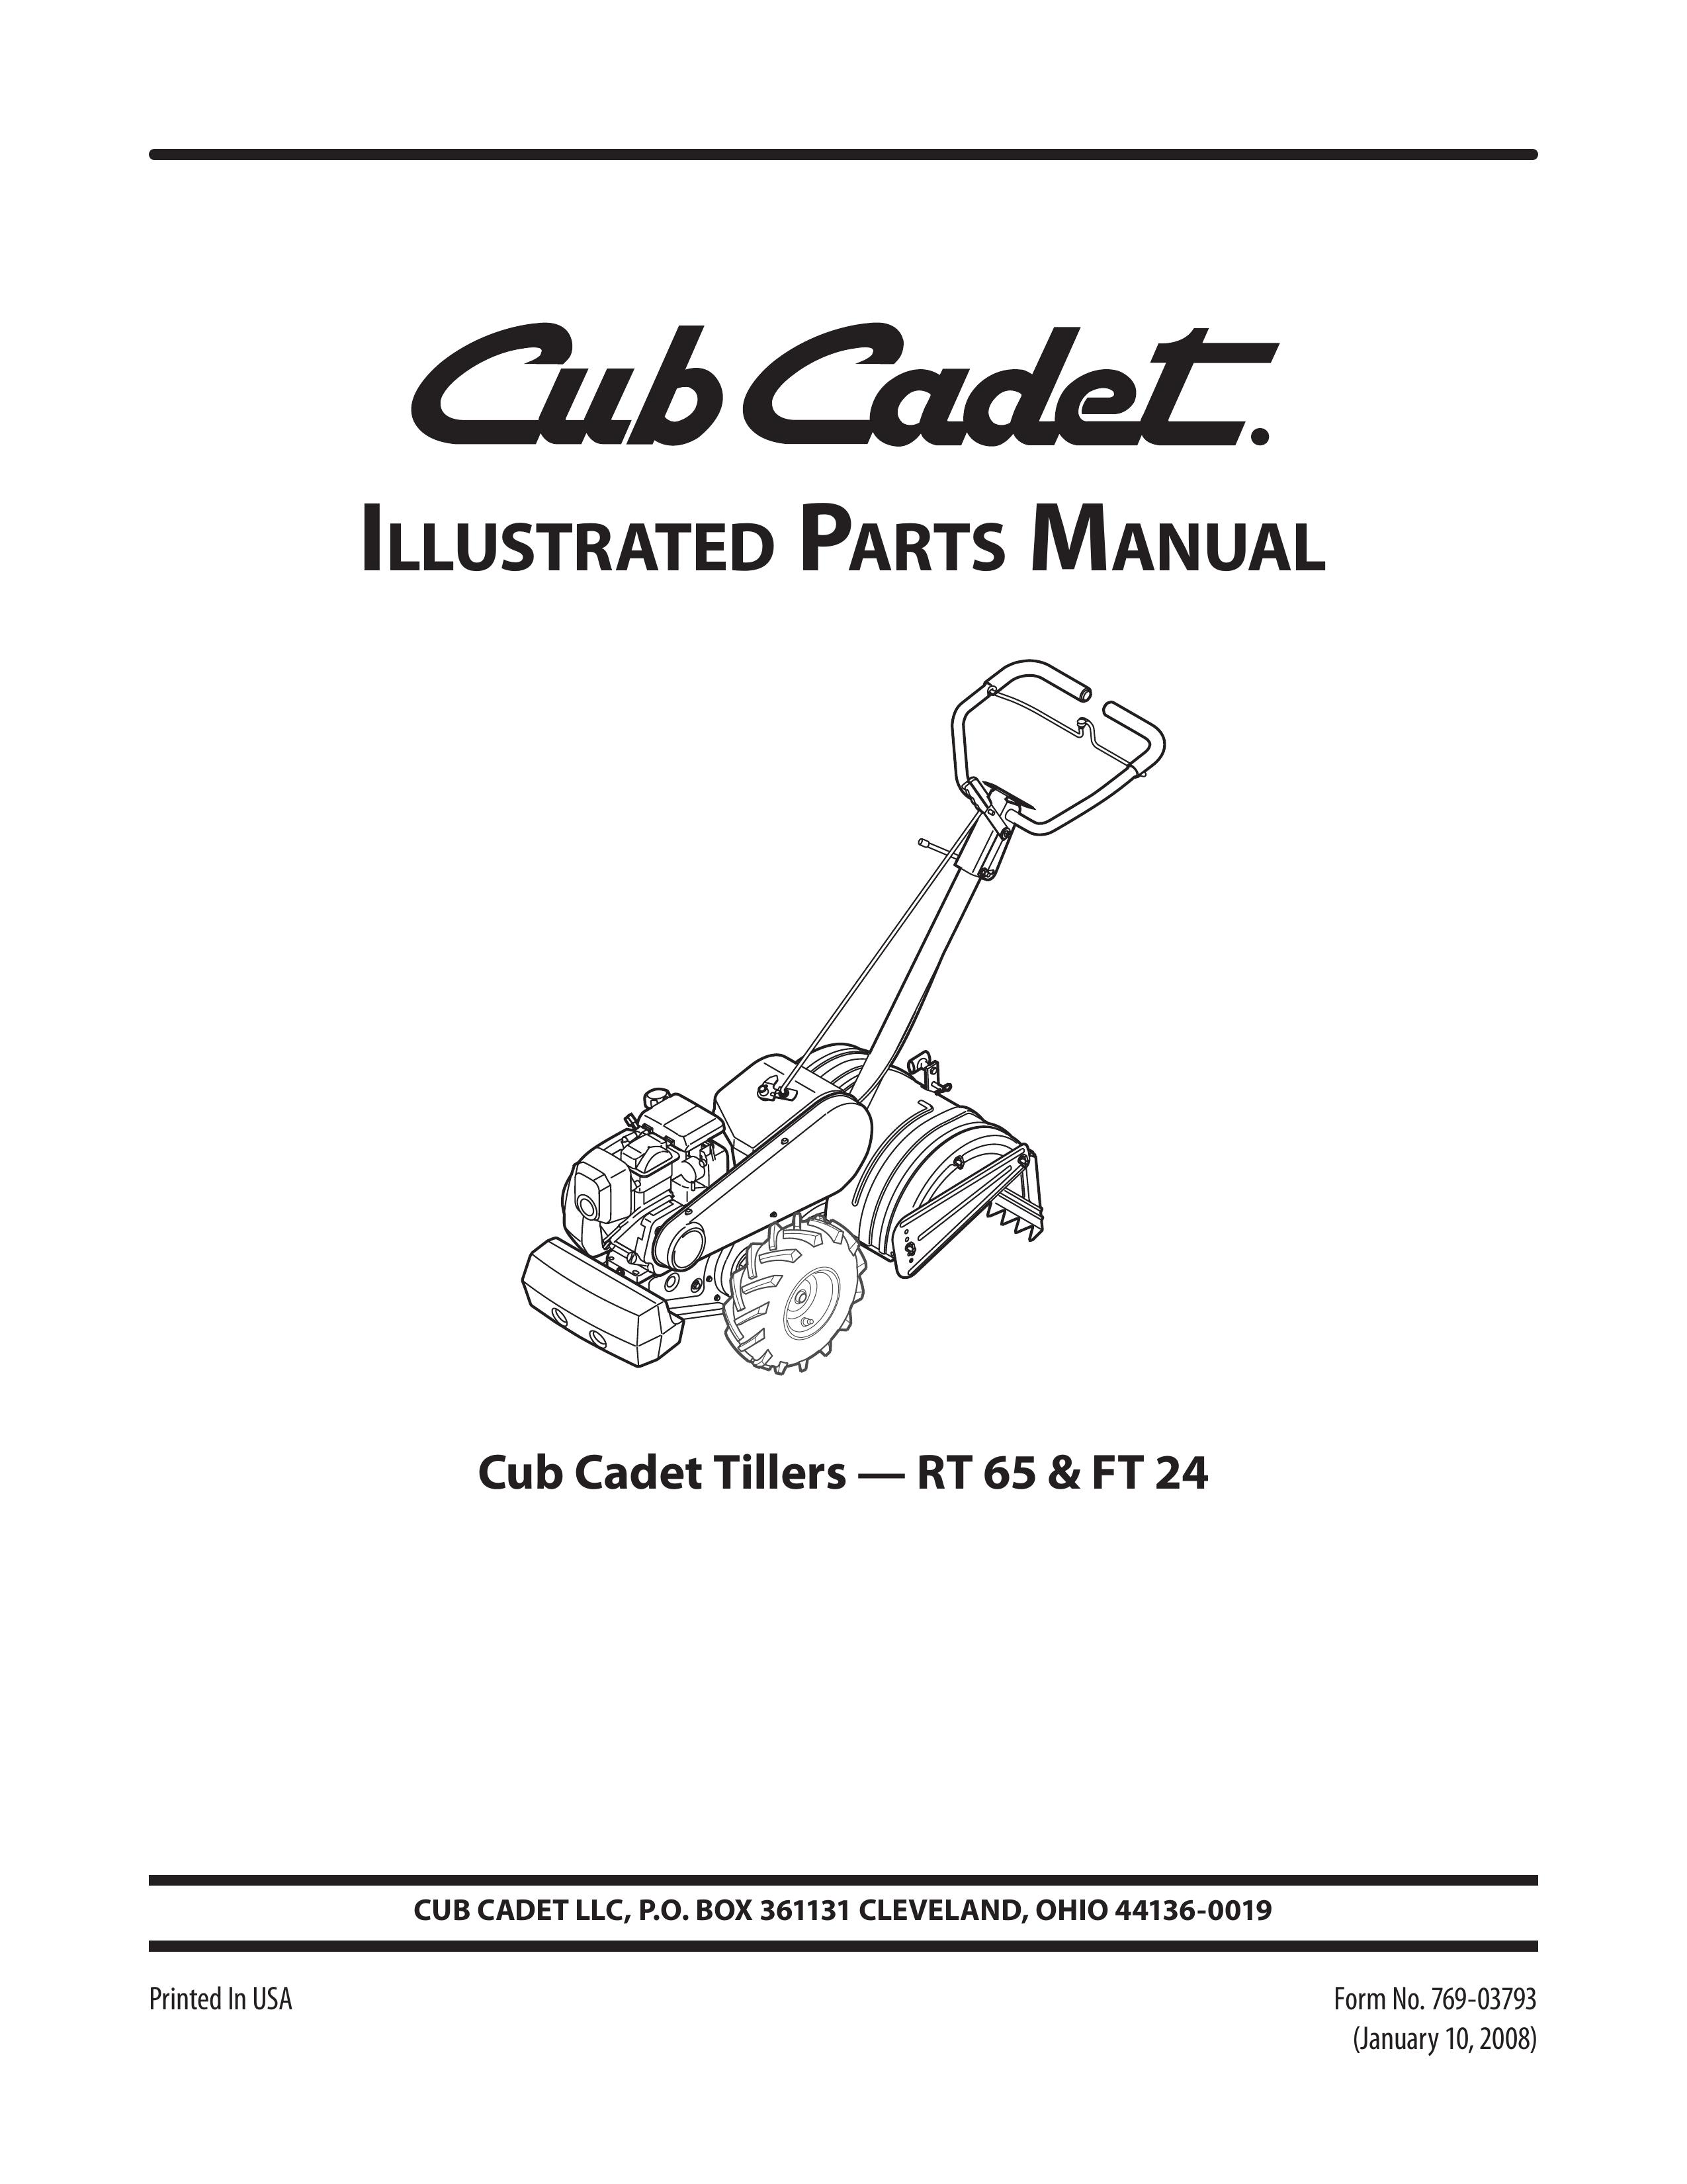 Cub Cadet FT 24 Tiller User Manual